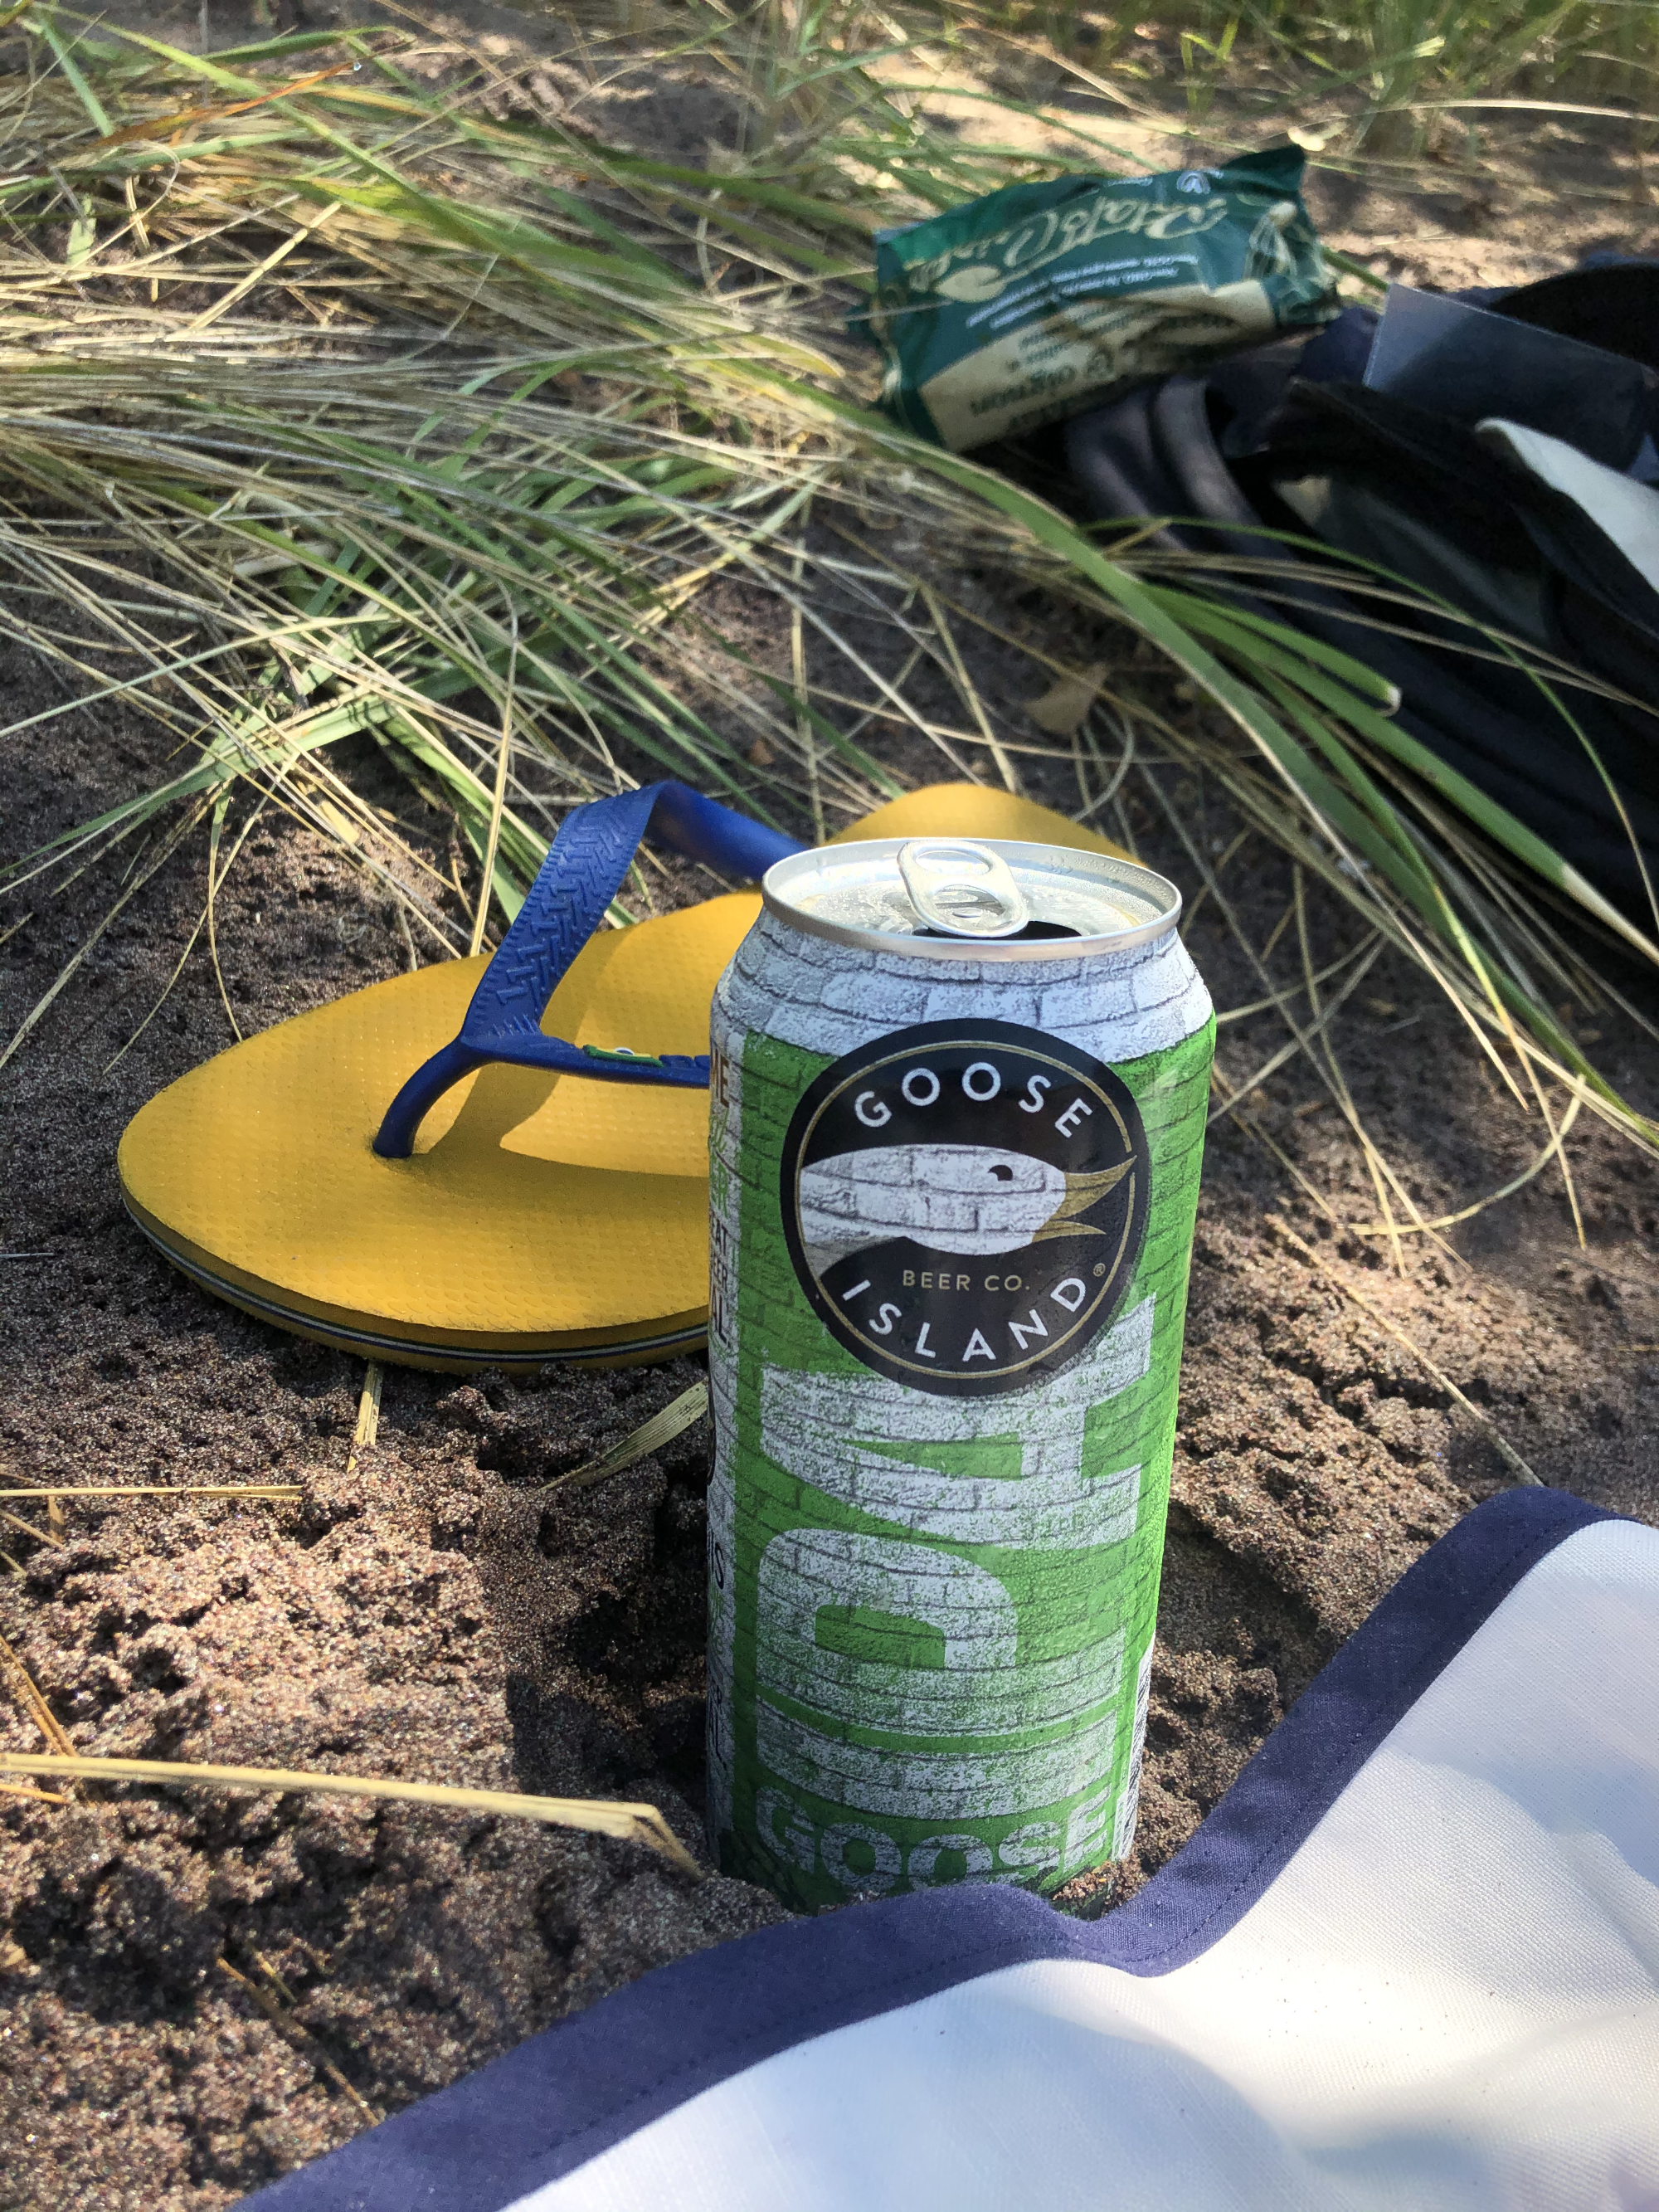 Sur une plage, Canette de bière Goose Island, Sandale Hawaiana jaune, et herbes en arrière-plan.